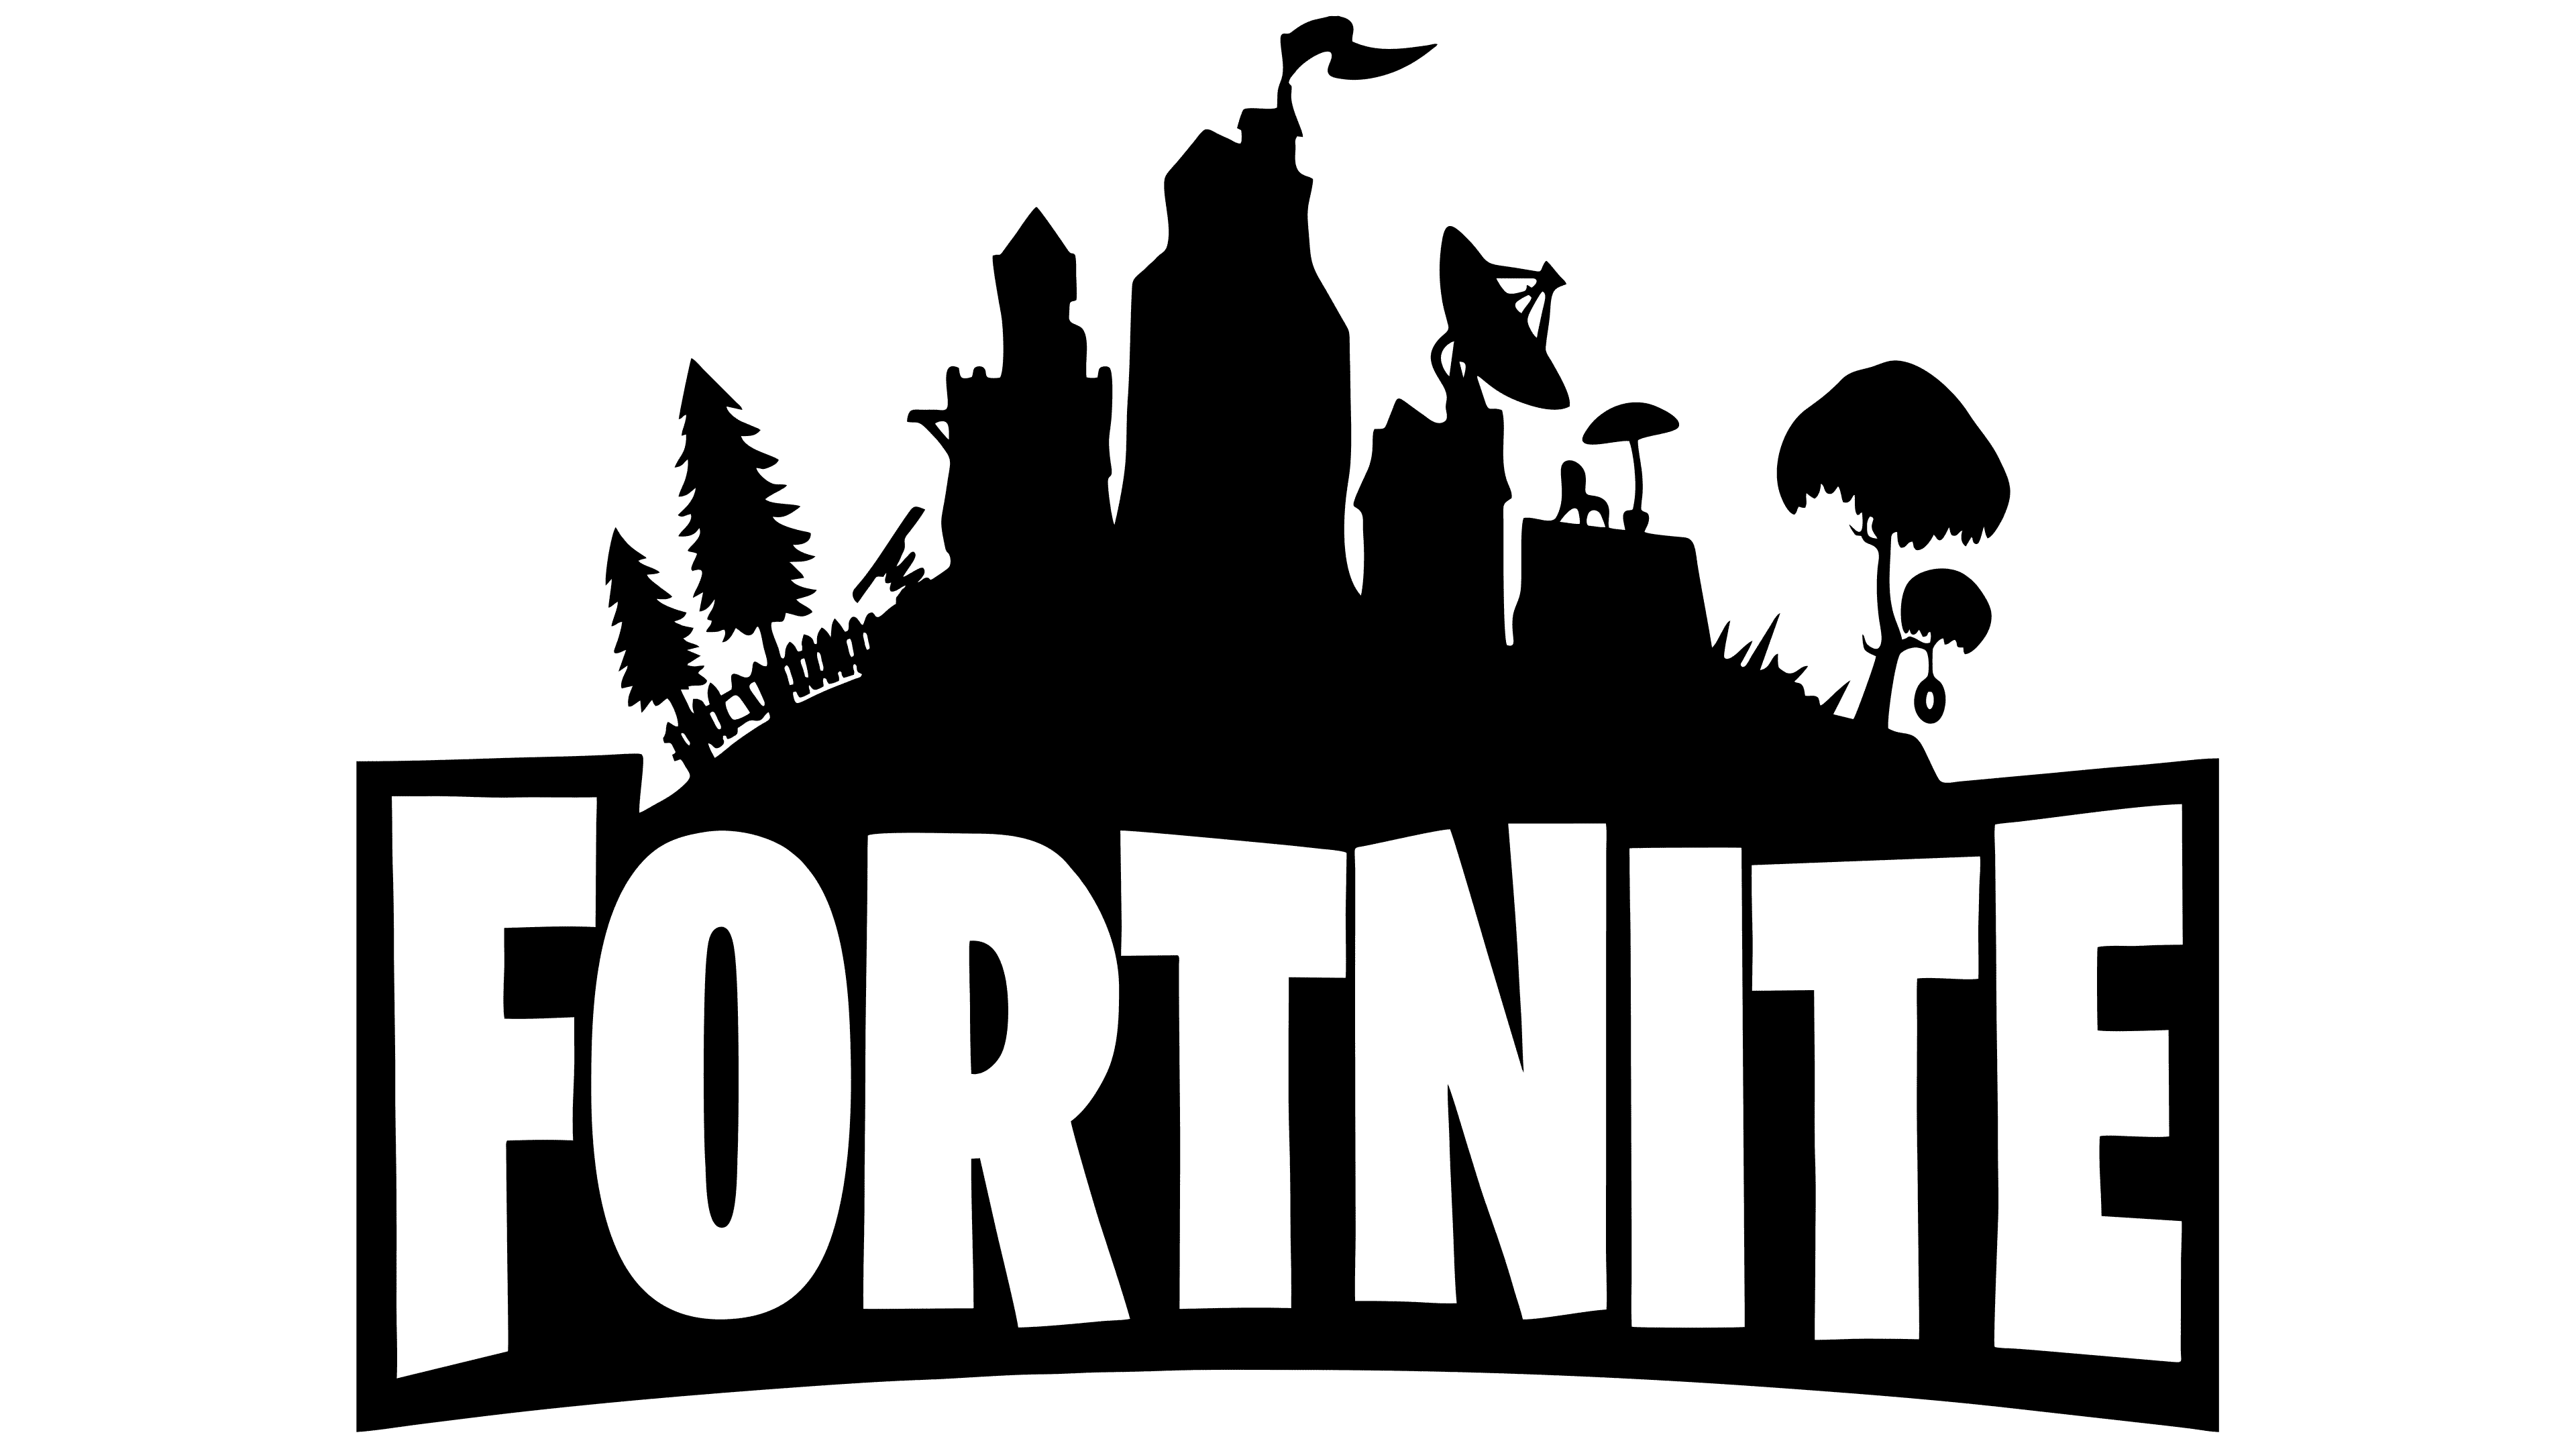 cool fortnite logos